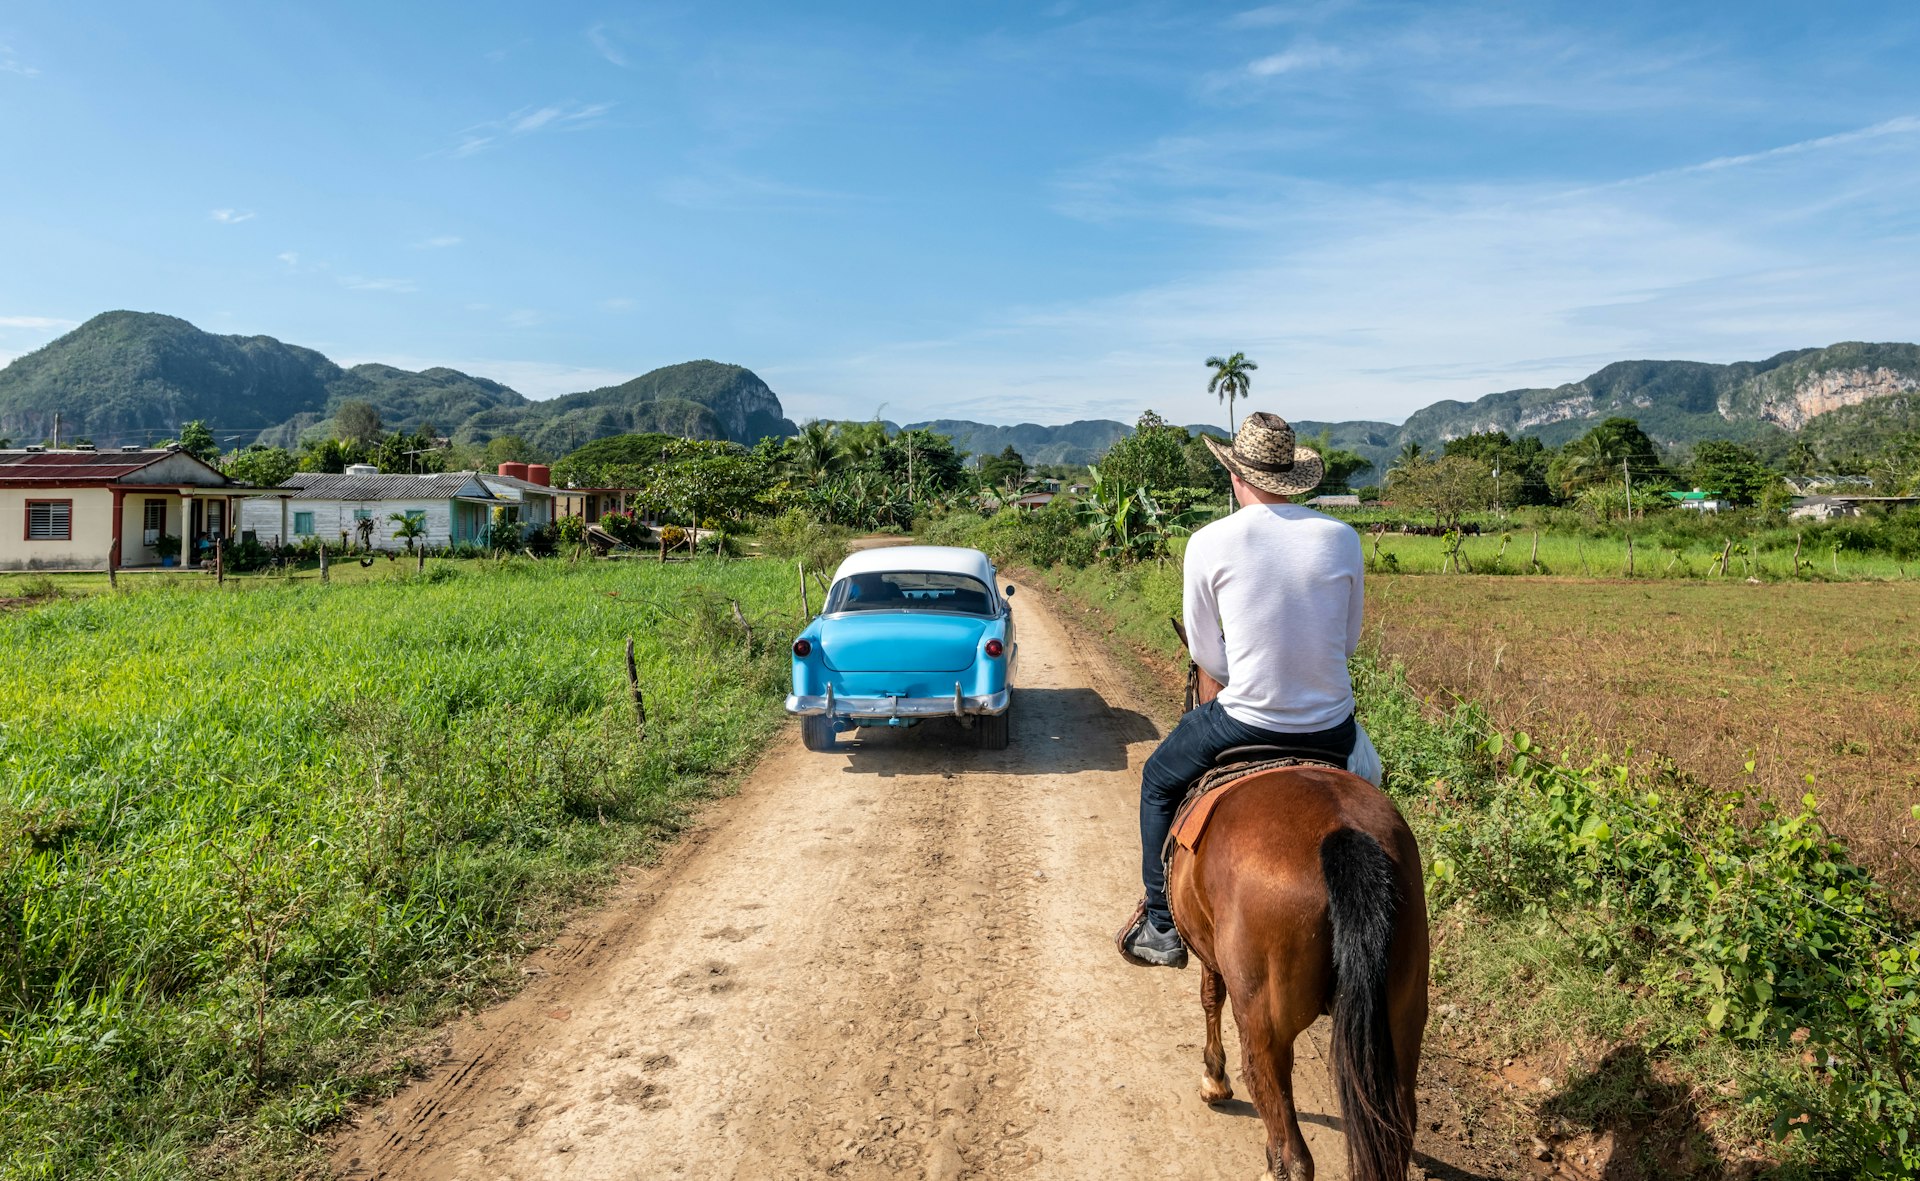 A classic car passes a man on horse in Viñales, Cuba